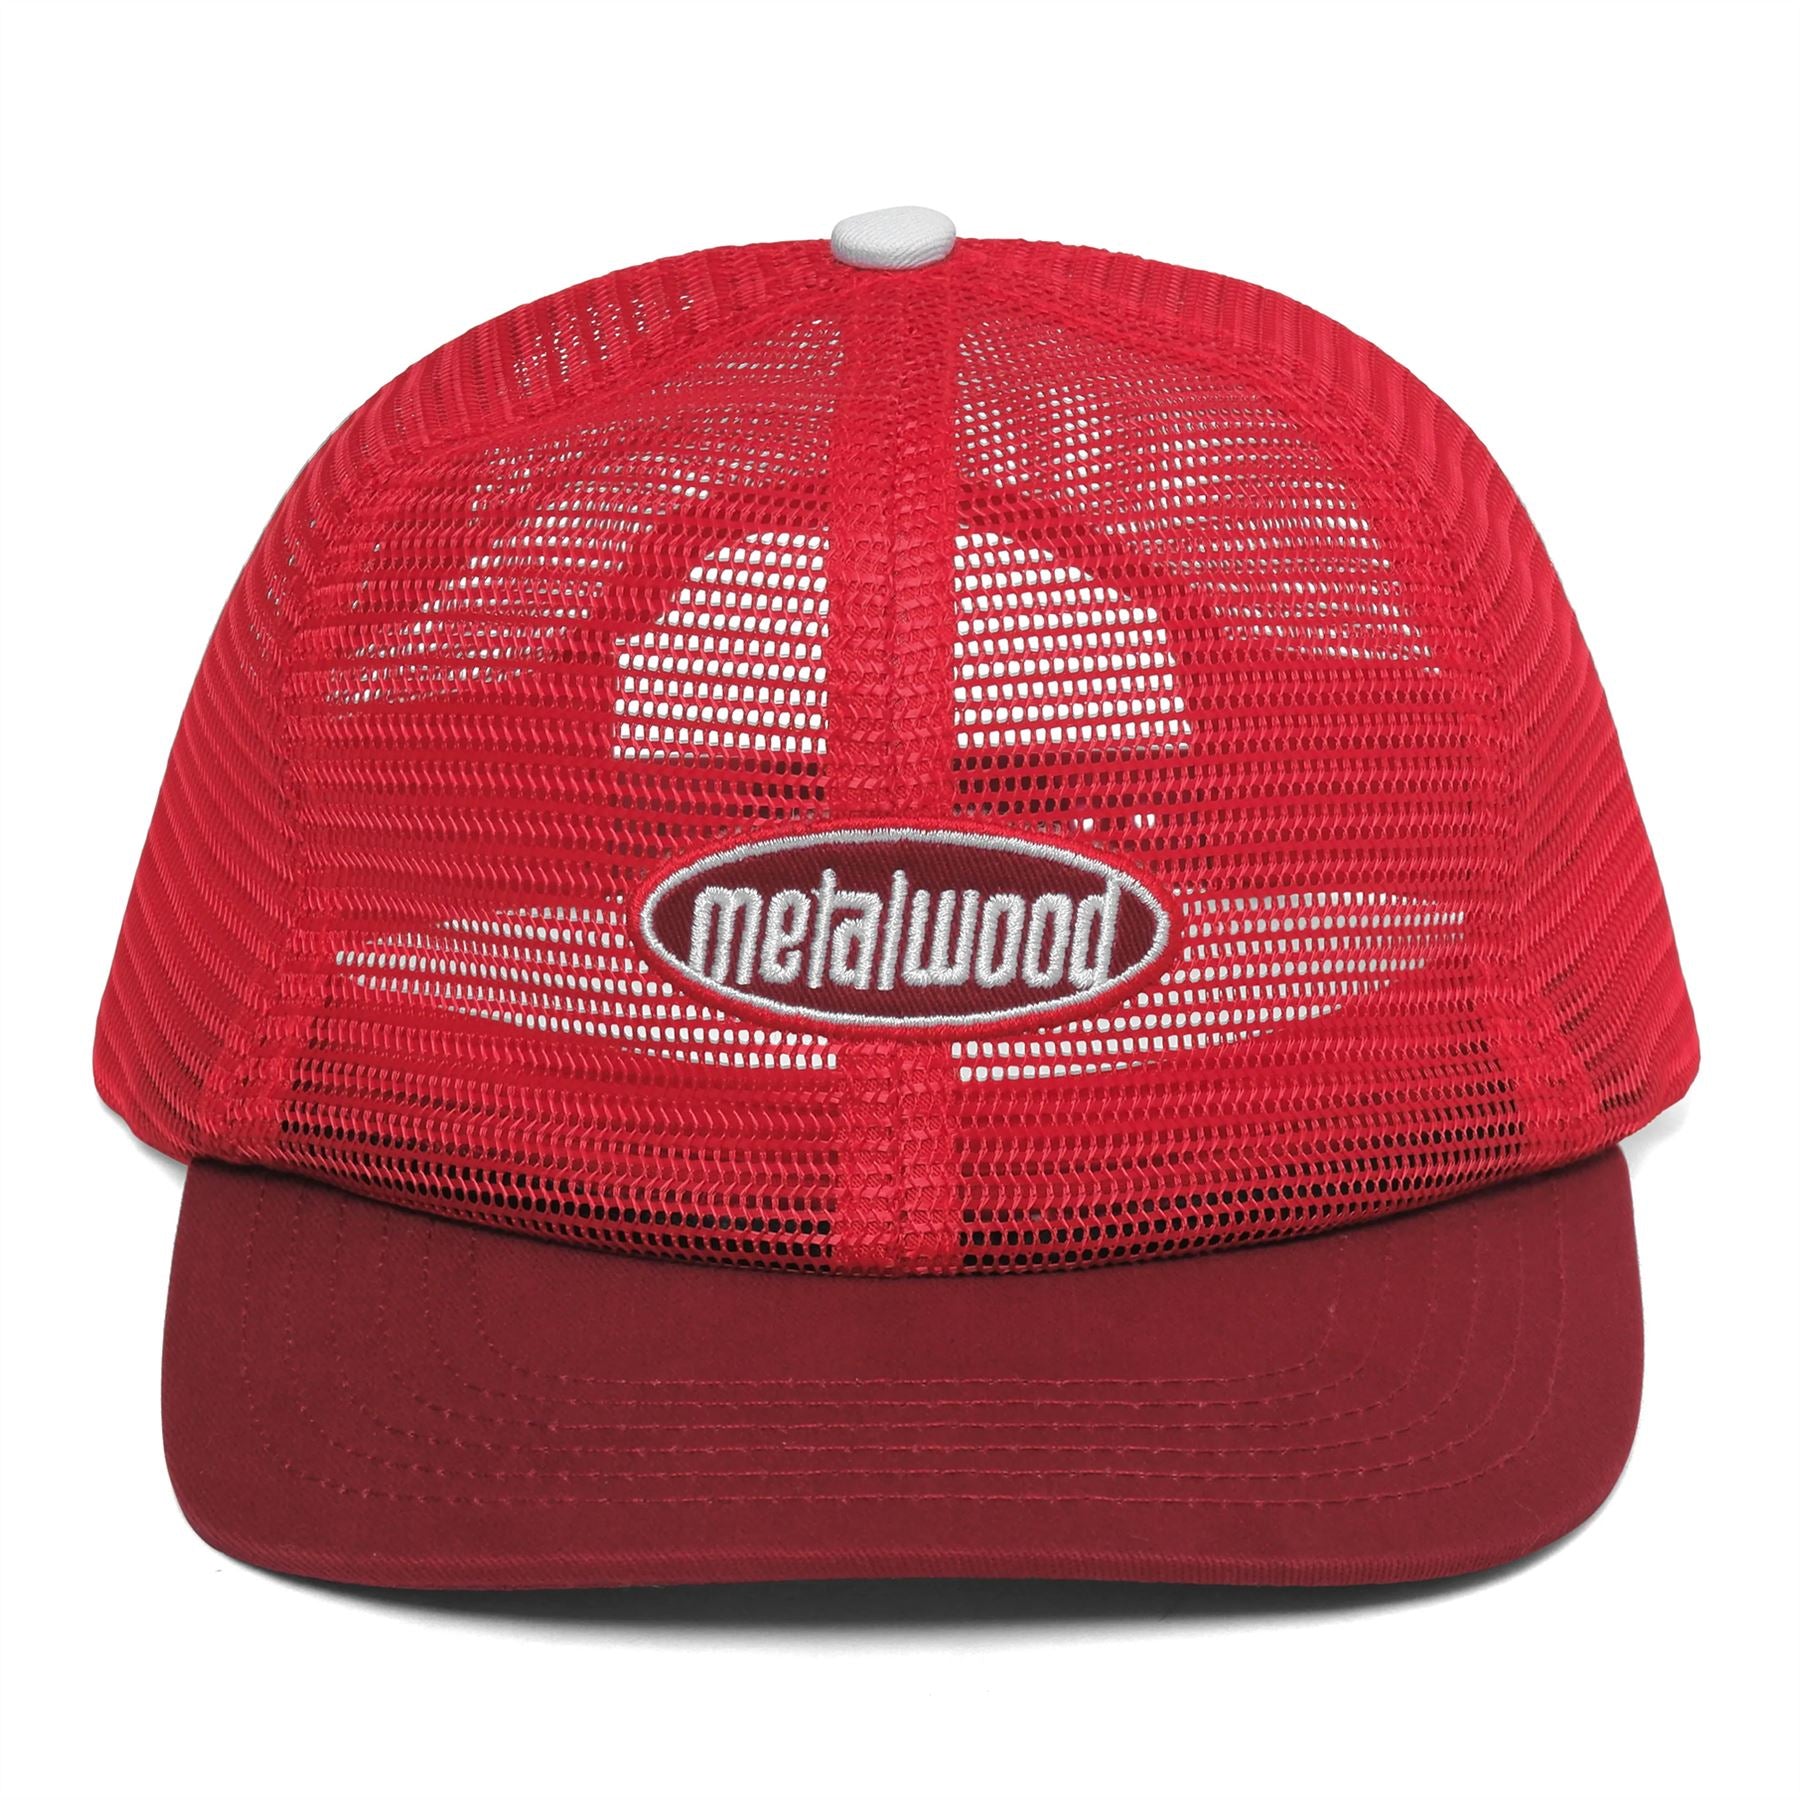 Milwaukee Tool Black GRIDIRON Trucker Hat - Adjustable Fit